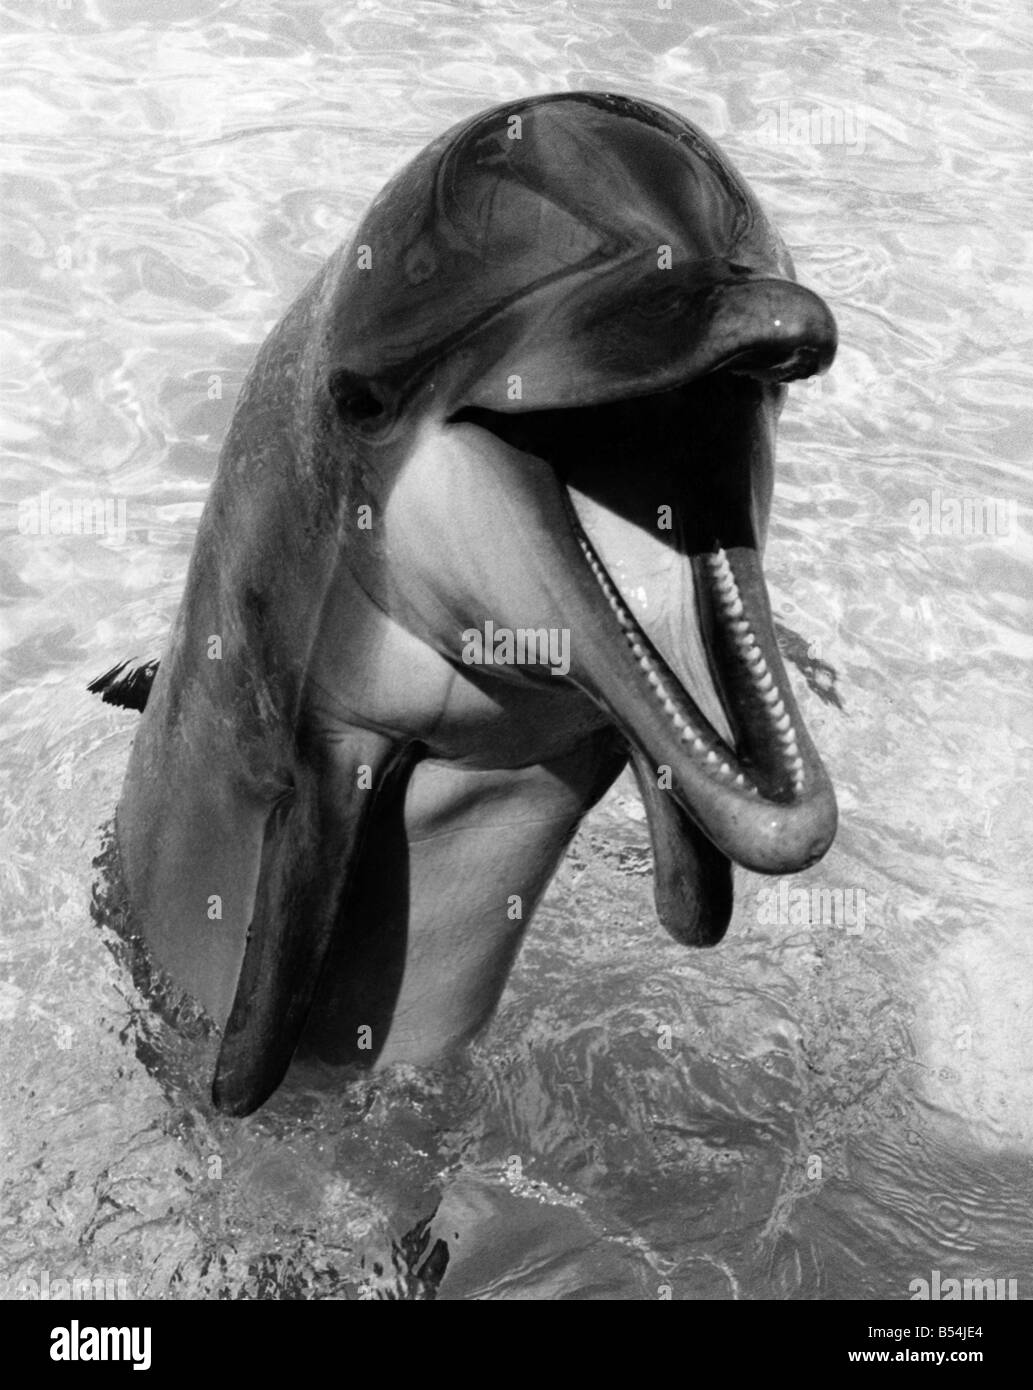 Professionnels à la recherche des spectacles de dauphins au large de ses dents comme il apparaît la tête hors de l'eau&# 13 ;&# 10;Août 1984 &# 13 ;&# 10;P011845 Banque D'Images